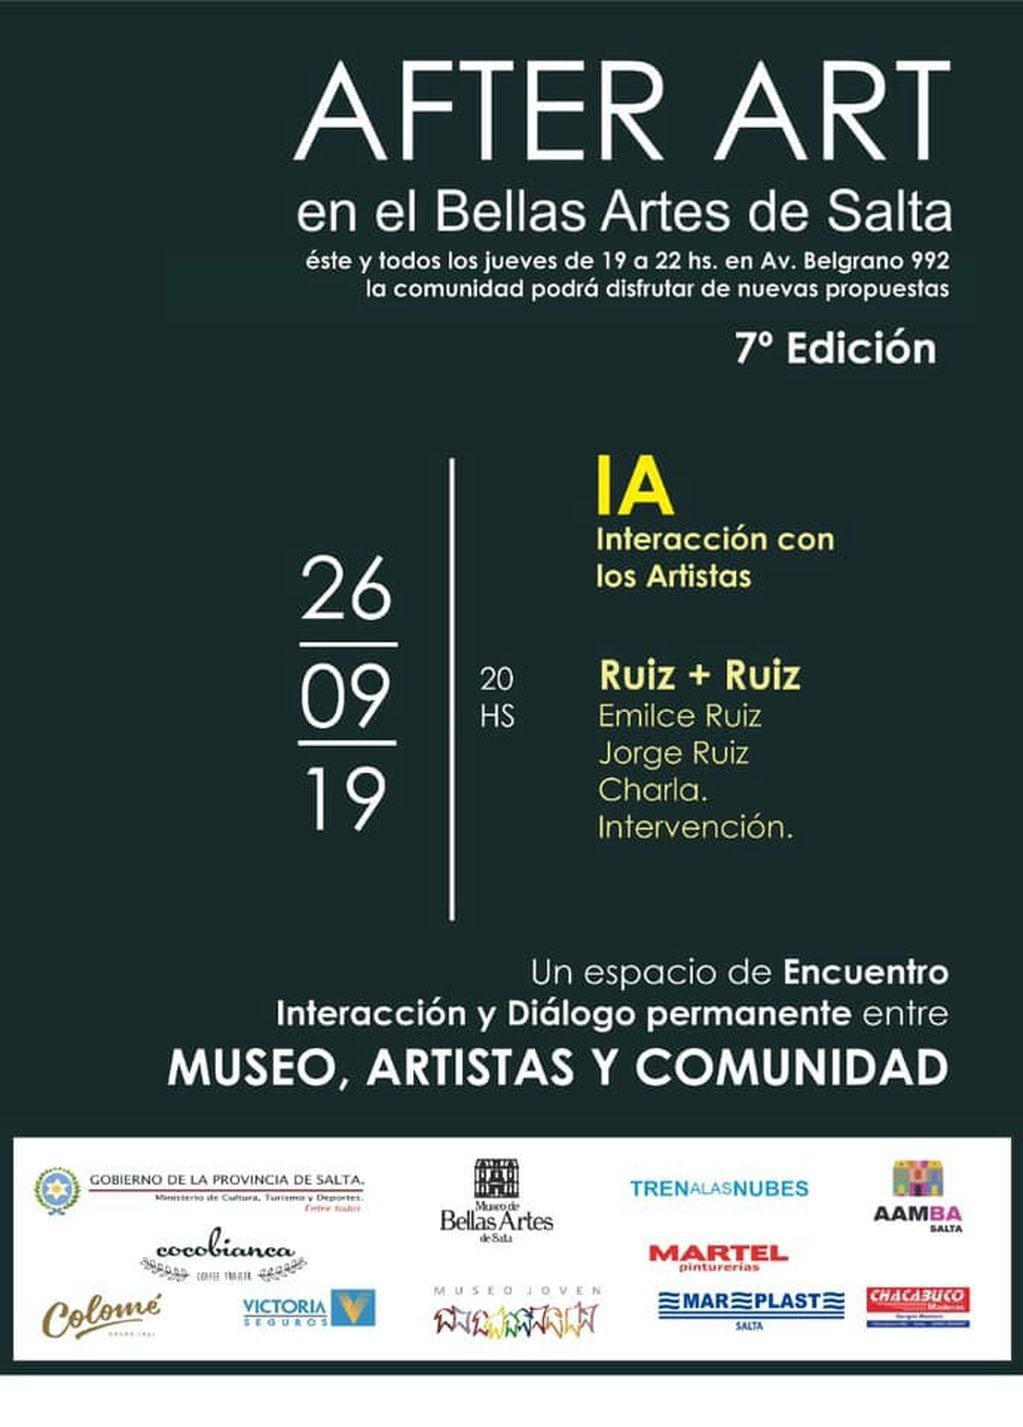 AFTER ART en el Bellas Artes de Salta (Facebook Museo Bellas Artes Salta)